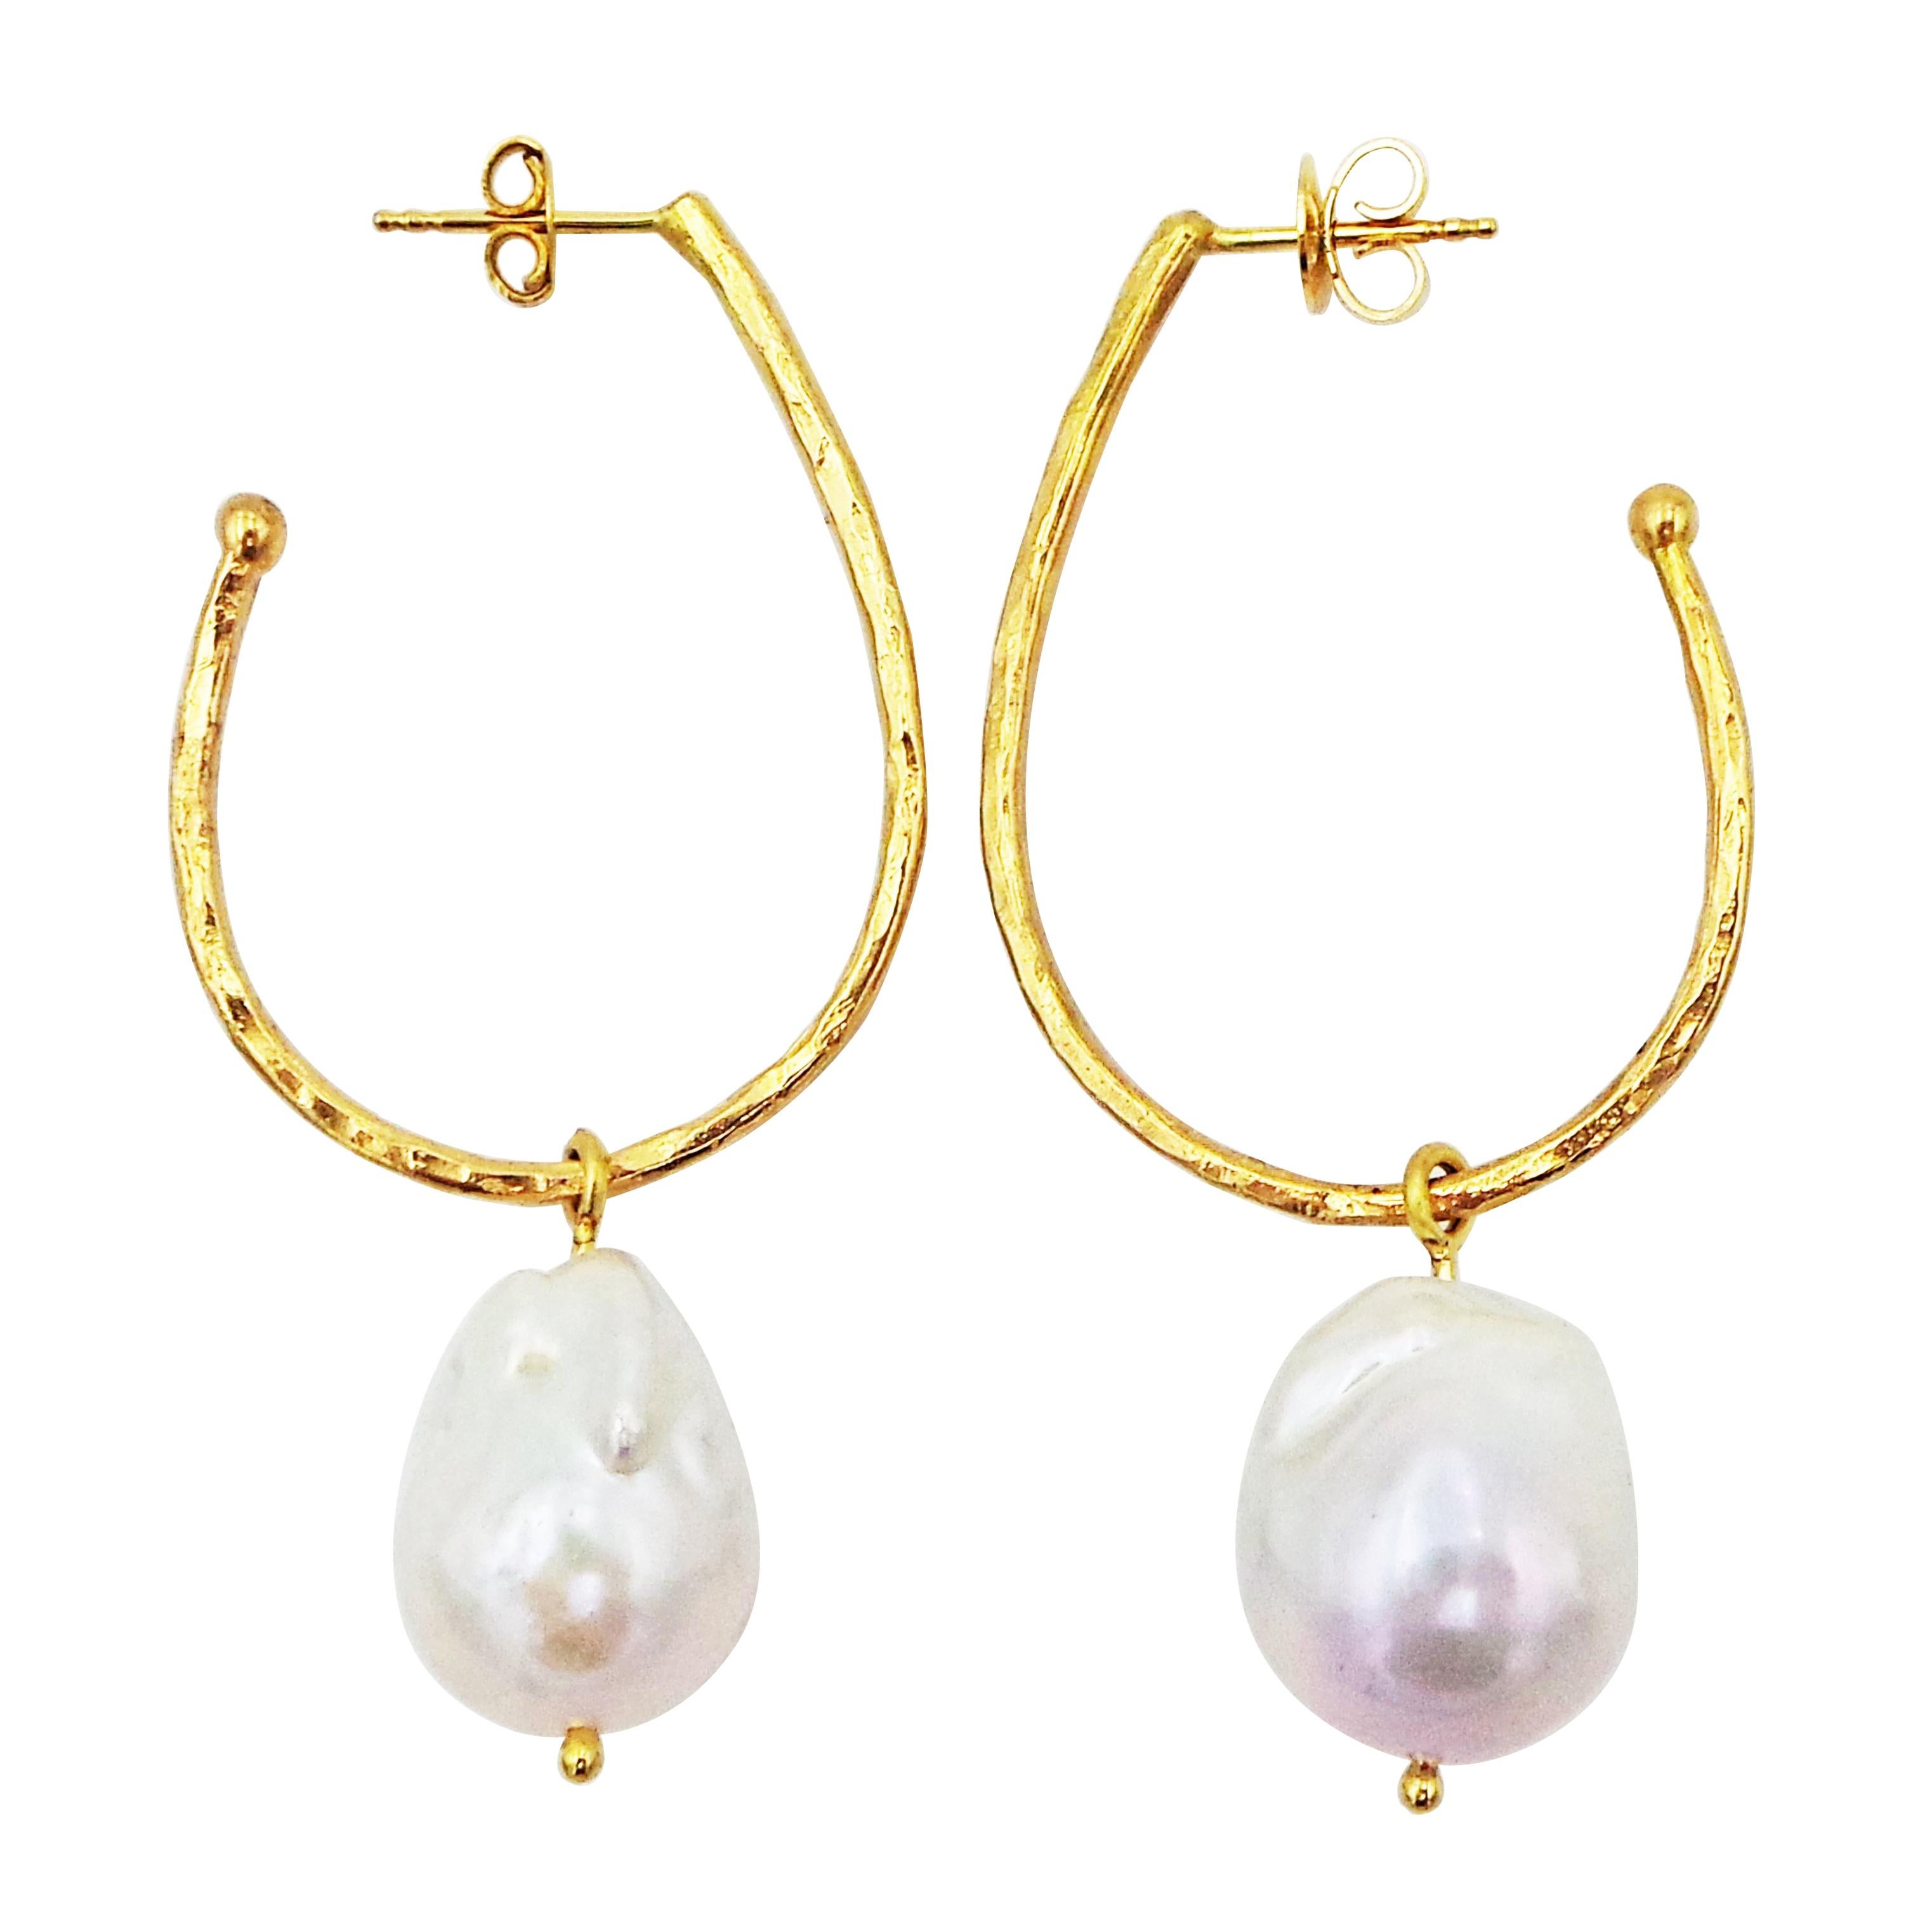 Clous d'oreilles créoles allongées en or 18 carats martelé avec breloques en perles baroques